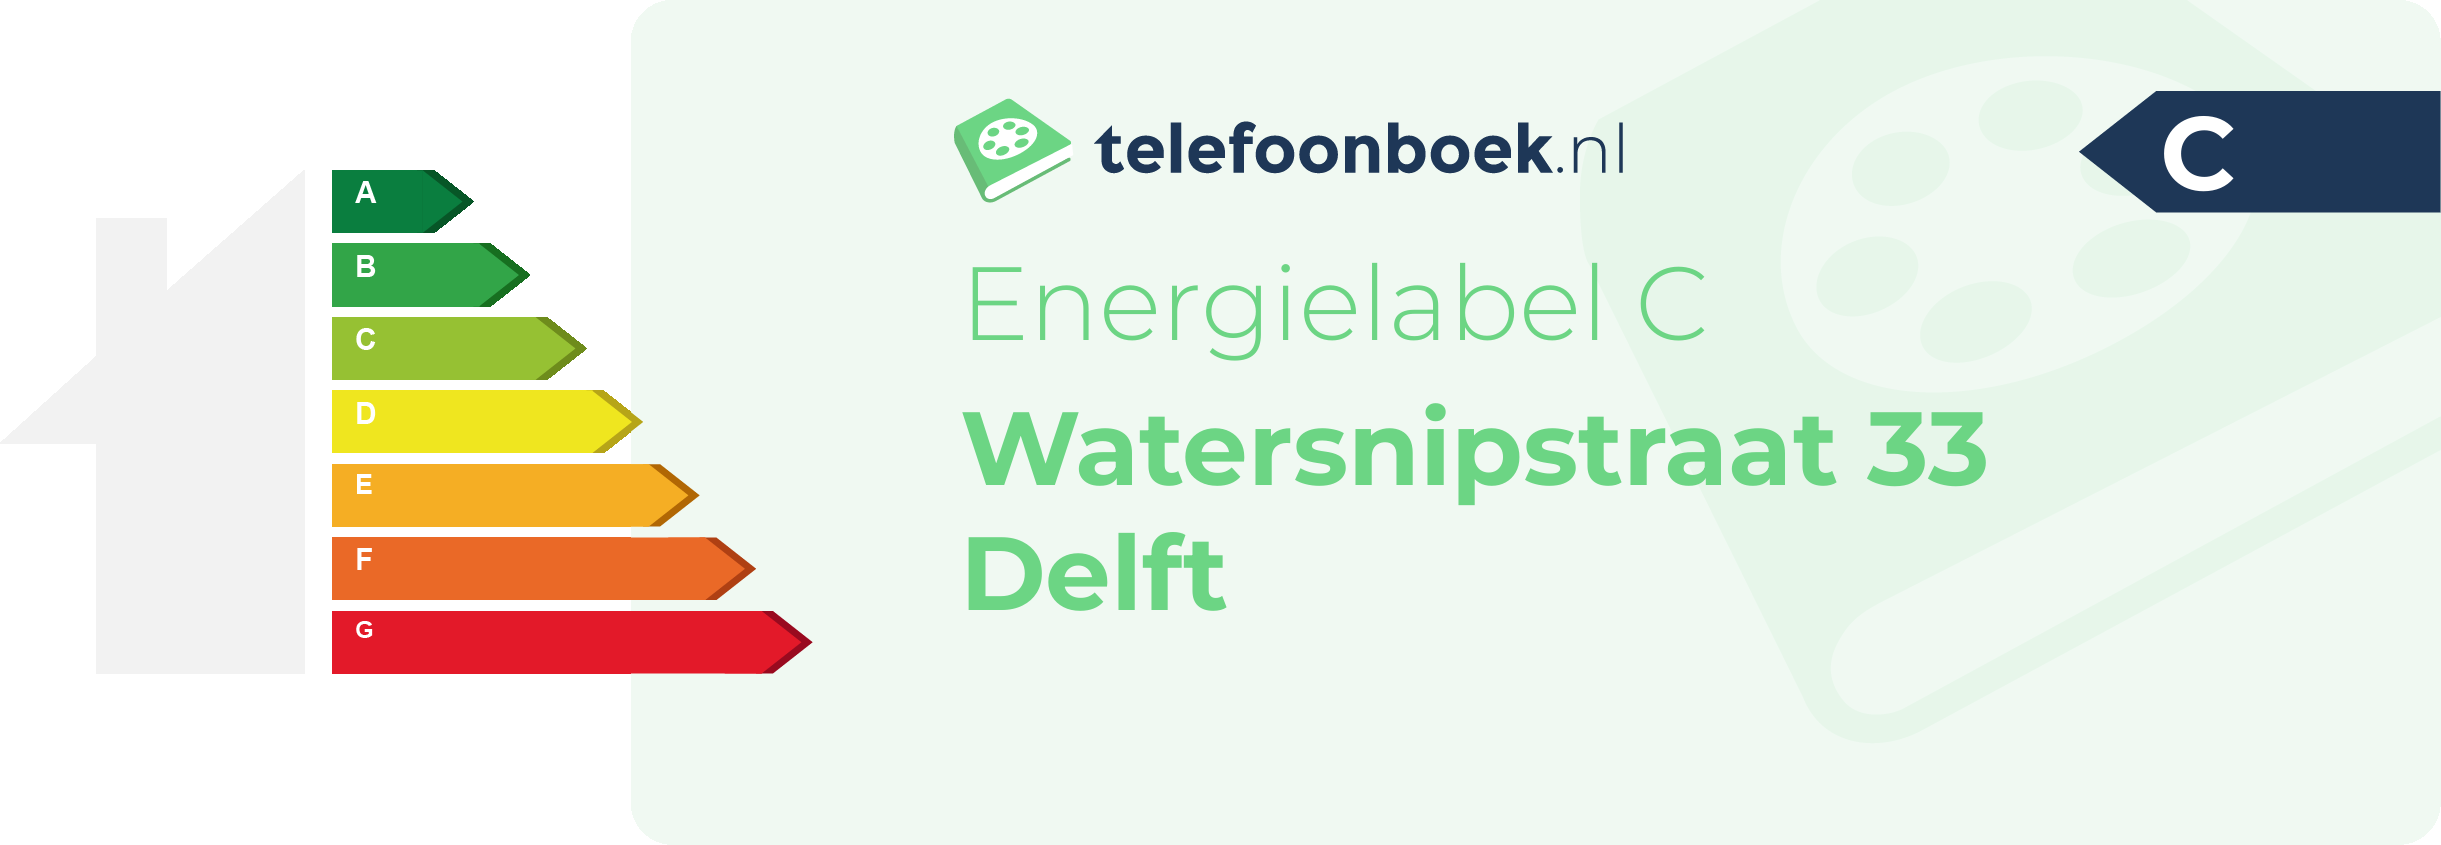 Energielabel Watersnipstraat 33 Delft